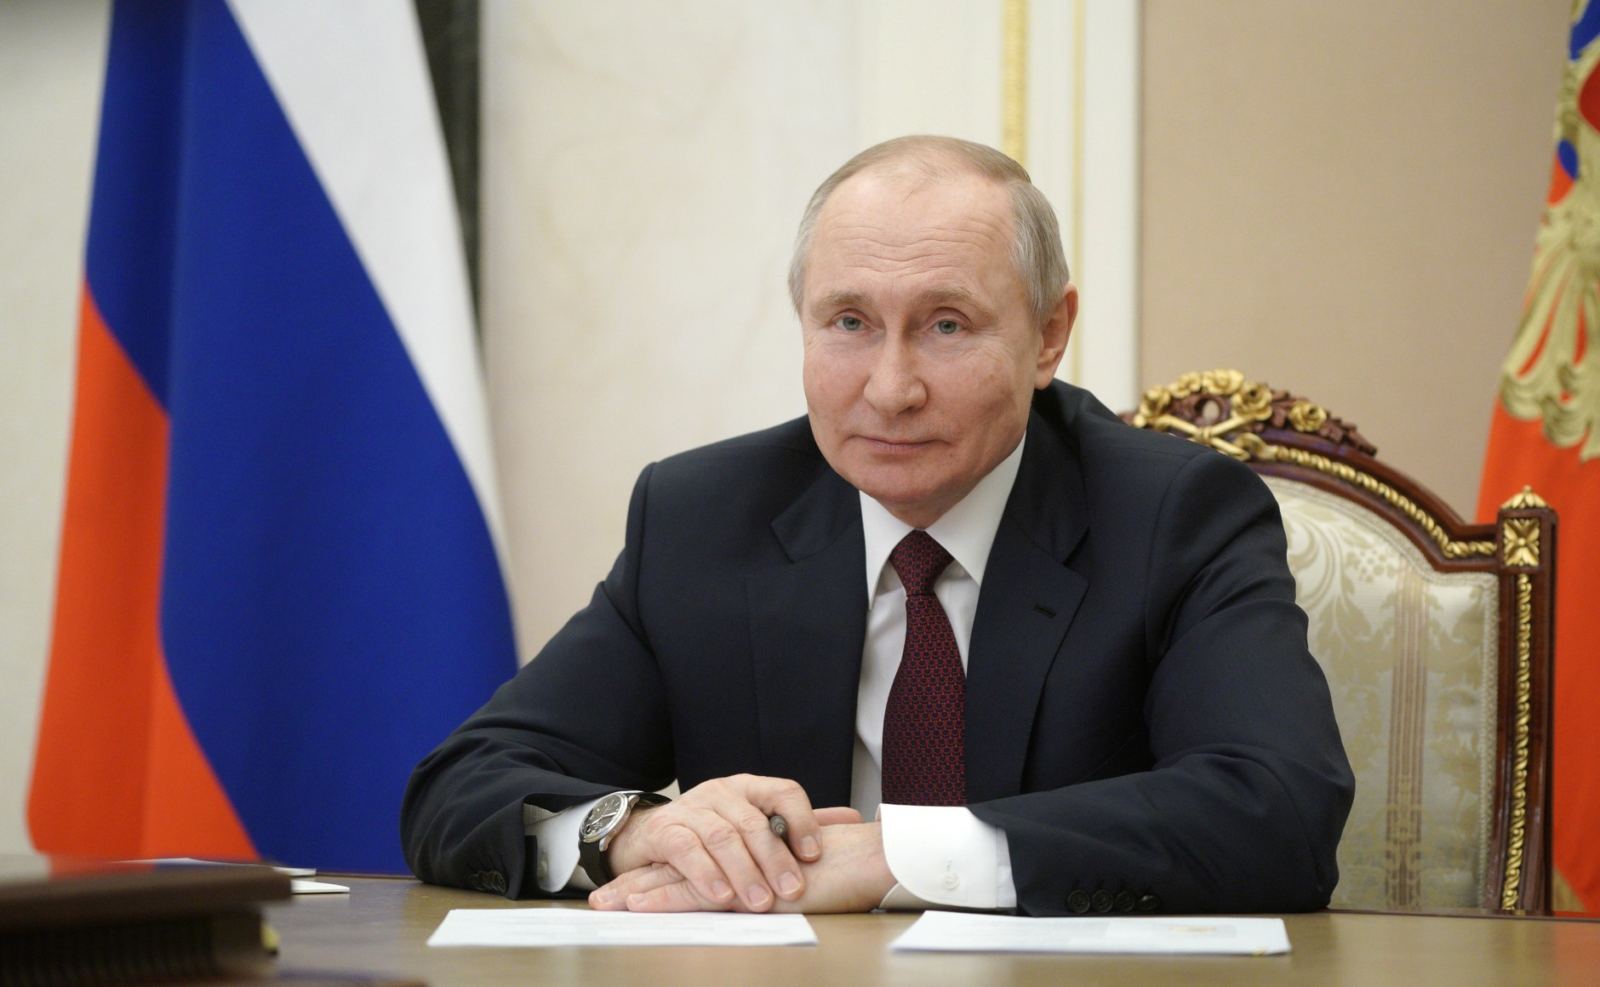 Gastartikel von Putin in der „Zeit“: Russland reicht Europa erneut die Hand zur Freundschaft